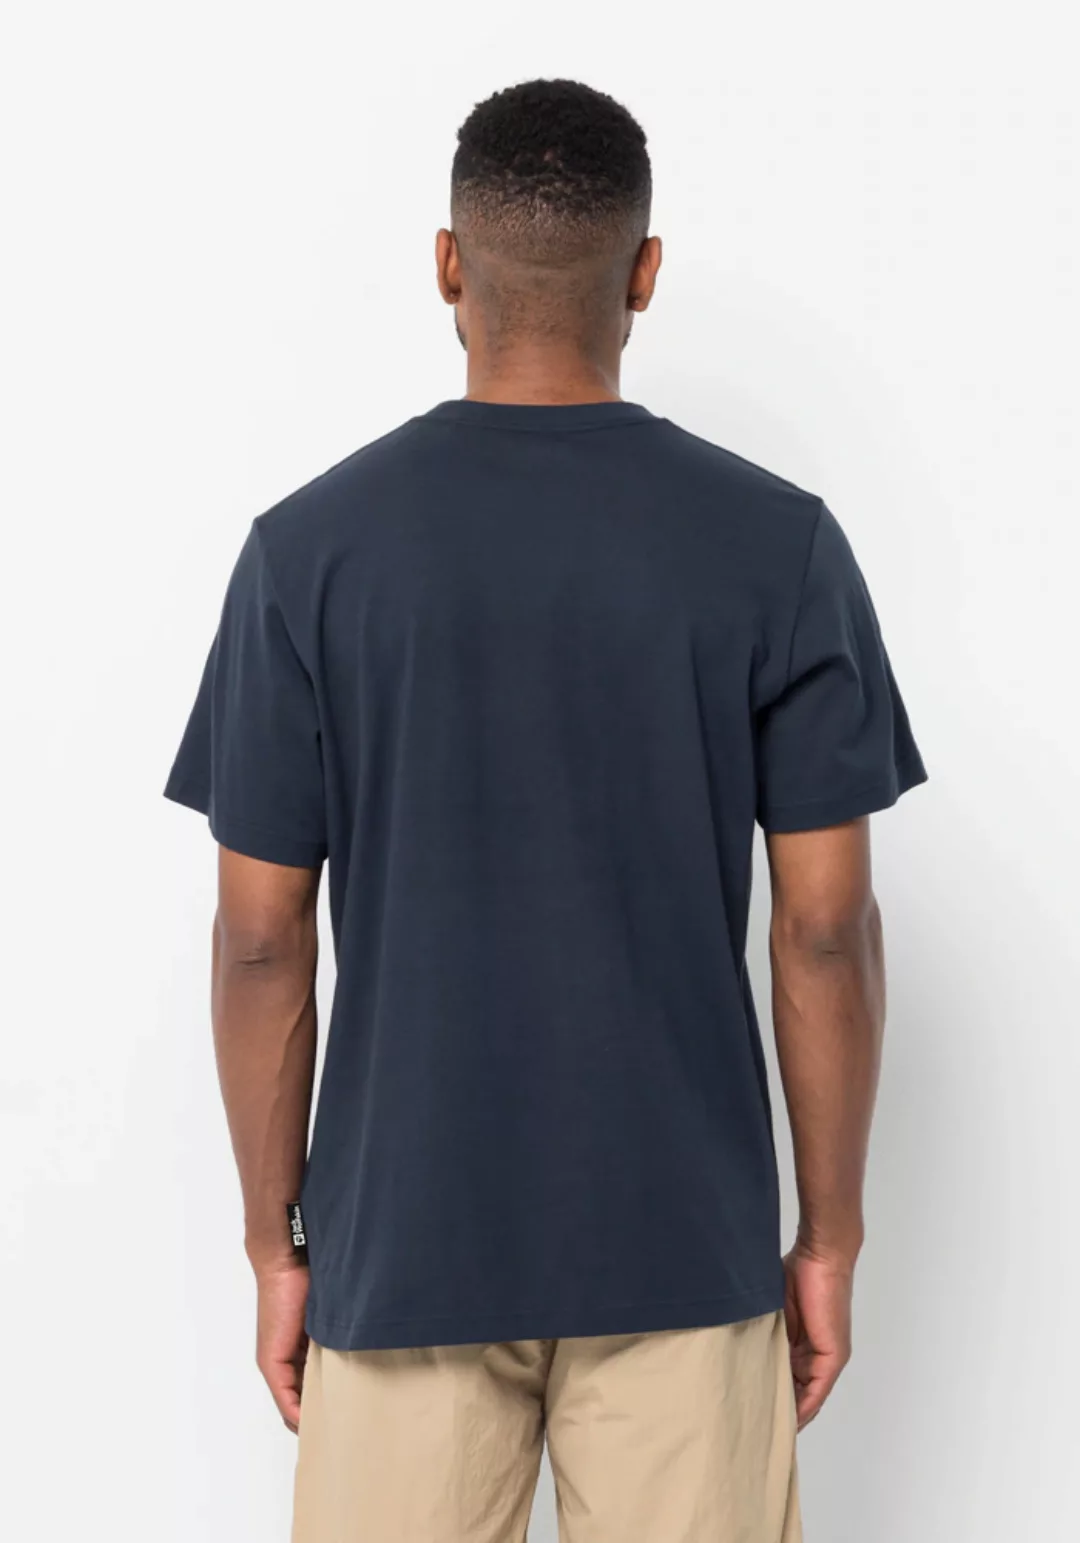 Jack Wolfskin T-Shirt "BRAND T M" günstig online kaufen